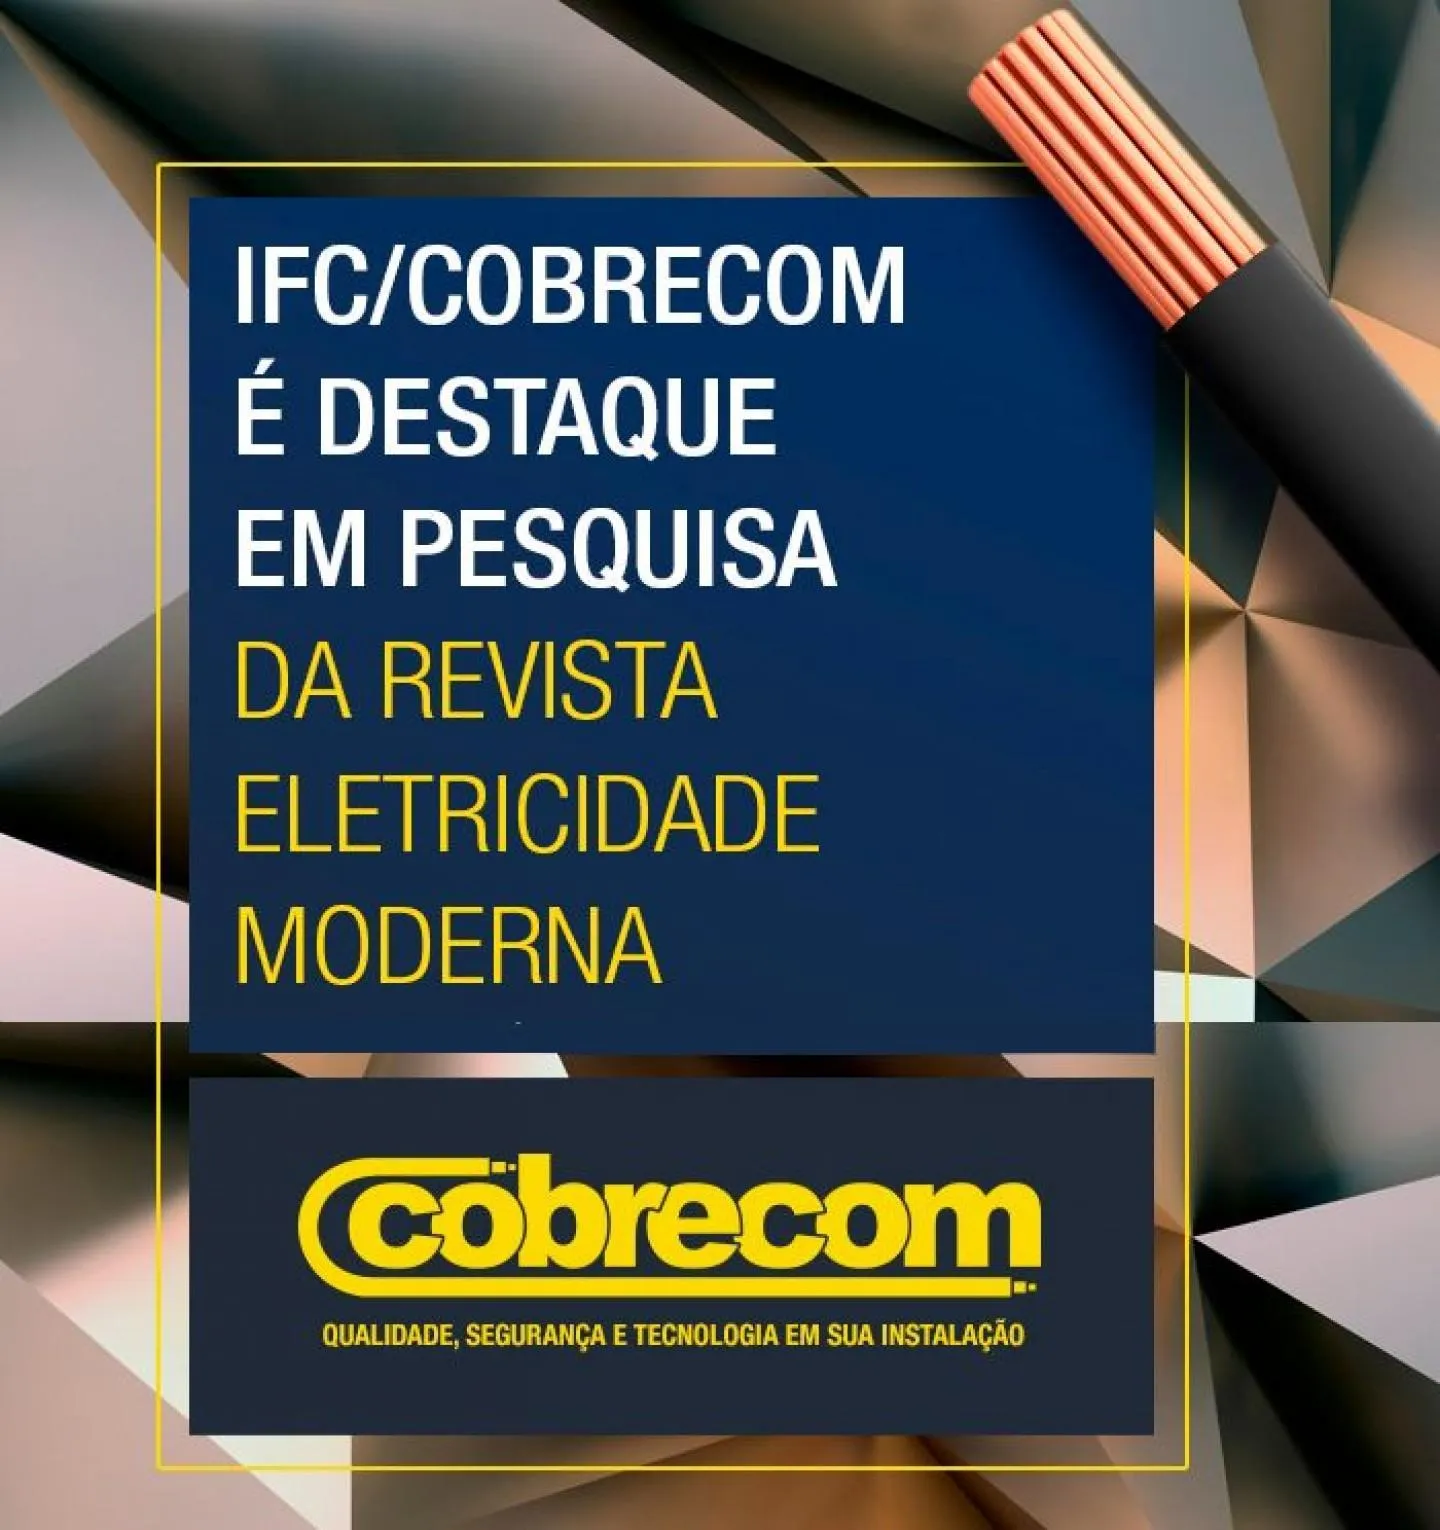 Destaque nas pesquisas realizadas pela Revista Eletricidade Moderna | Cobrecom